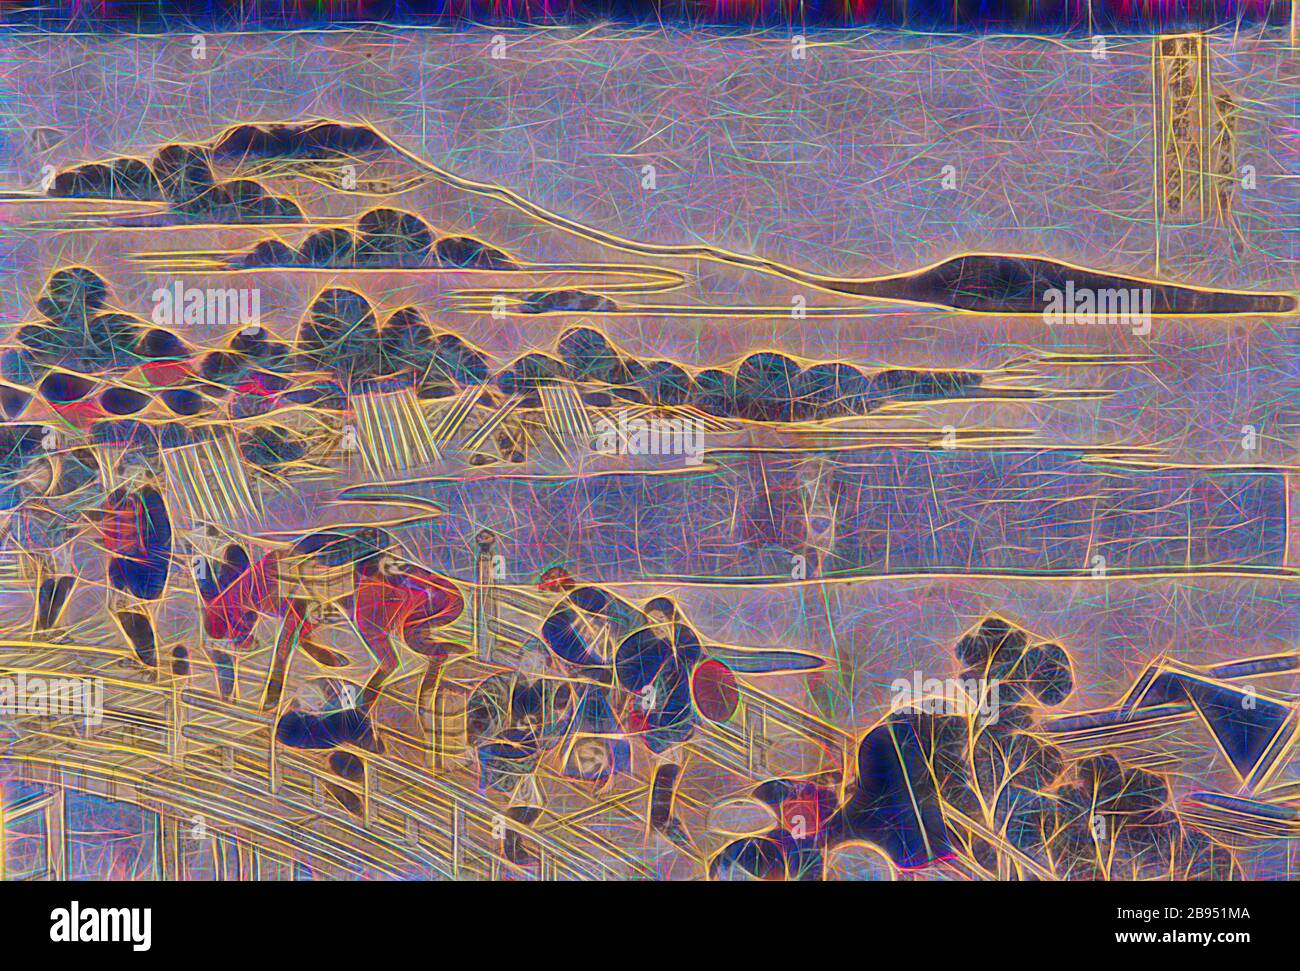 Ponte Echizen nella provincia di Fukui, Katsushika Hokusai 葛飾北斎 (giapponese, 1760-1849), Edo, 1833-1834, inchiostro su carta, stampa a colori in blocchi di legno, 9-15/16 x 14-5/8 pollici. (Immagine e foglio), firmato dall'artista: Zen Hokusai i-itsu hitsu marchio dell'editore: Eijudō (Nishimura-ya Yohachi), serie, vedute dei famosi ponti in varie province, Arte Asiatica, Reimagined by Gibon, disegno di calda allegra luce incandescente e di luminosità radianti. Arte classica reinventata con un tocco moderno. La fotografia ispirata al futurismo, abbracciando l'energia dinamica della tecnologia moderna, del movimento, della velocità e rivoluzionando la cultura. Foto Stock